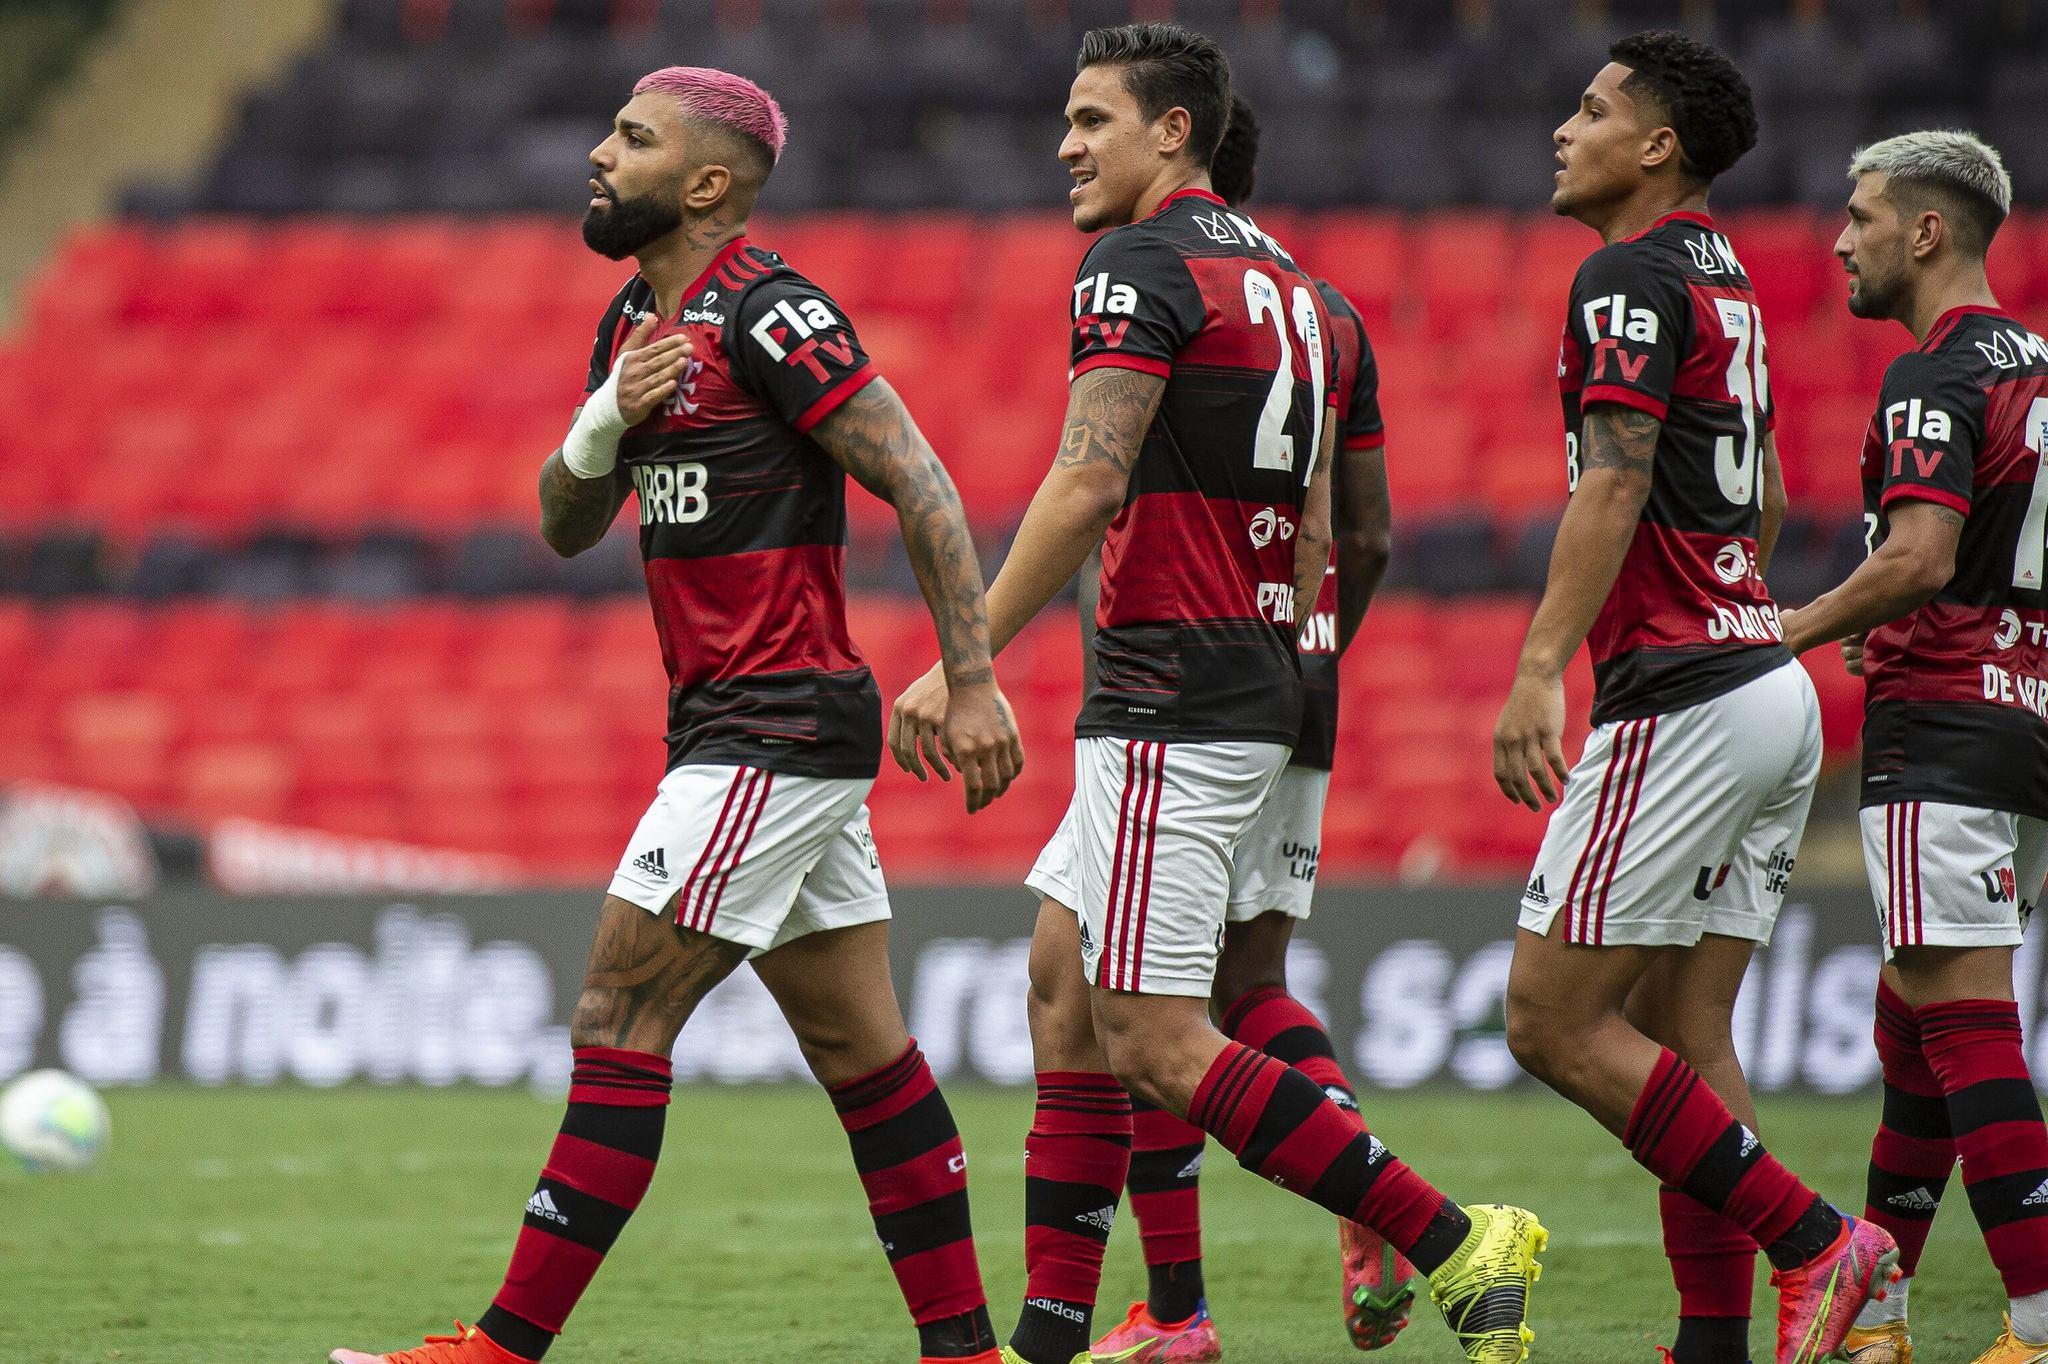 Clube de Regatas do Flamengo - Passamos 1/3 do Brasileirão. Seriedade em  todos os jogos! O Sportsbet #JogaJunto em todos os campeonatos. #CRF  #apostasesportivas #futebol #flamengo #brasileirao